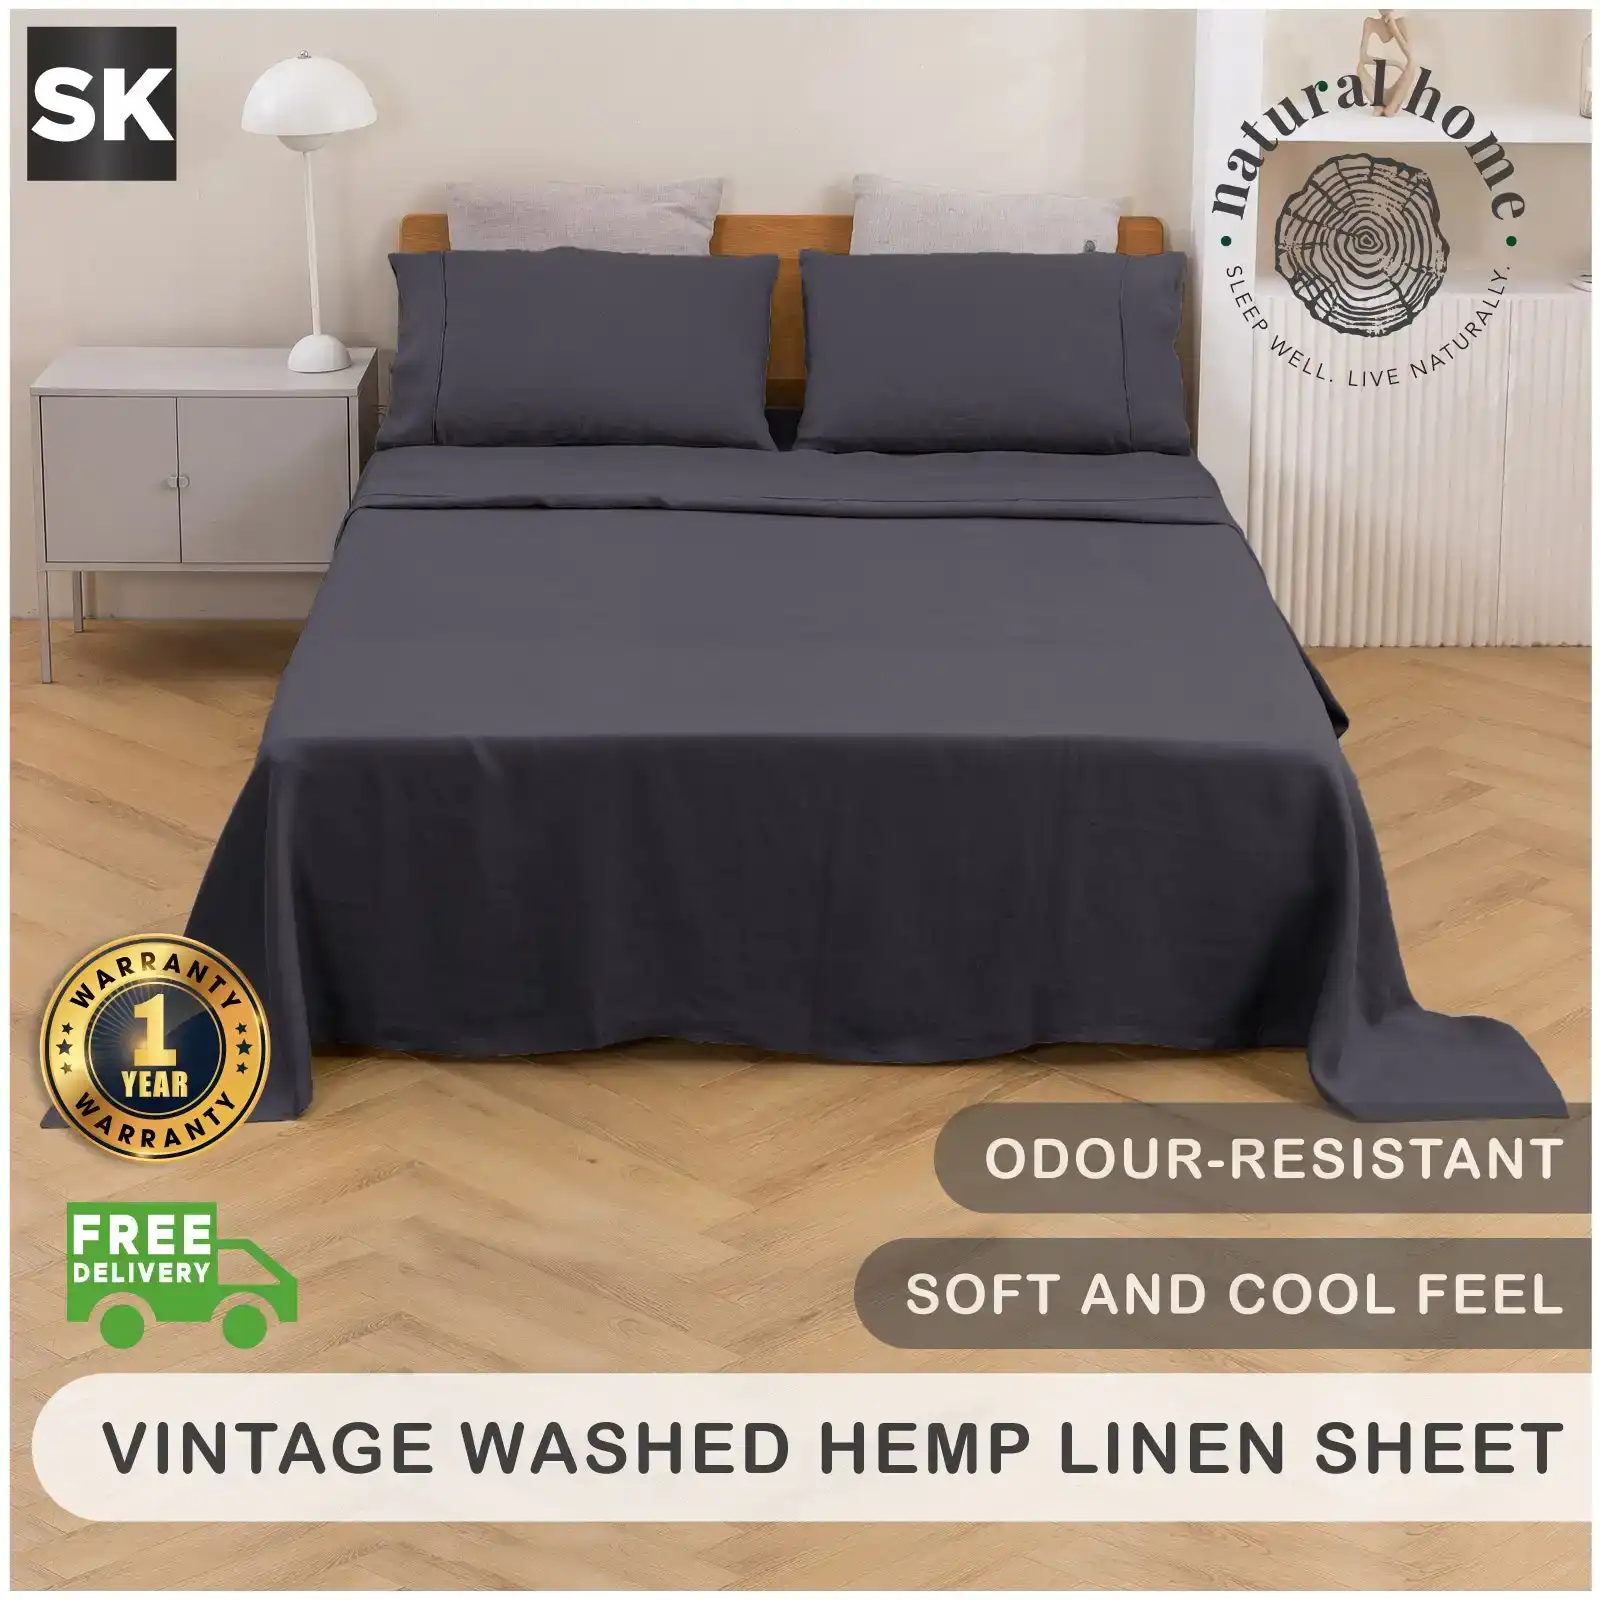 Natural Home Vintage Washed Hemp Linen Sheet Set Charcoal Super King Bed